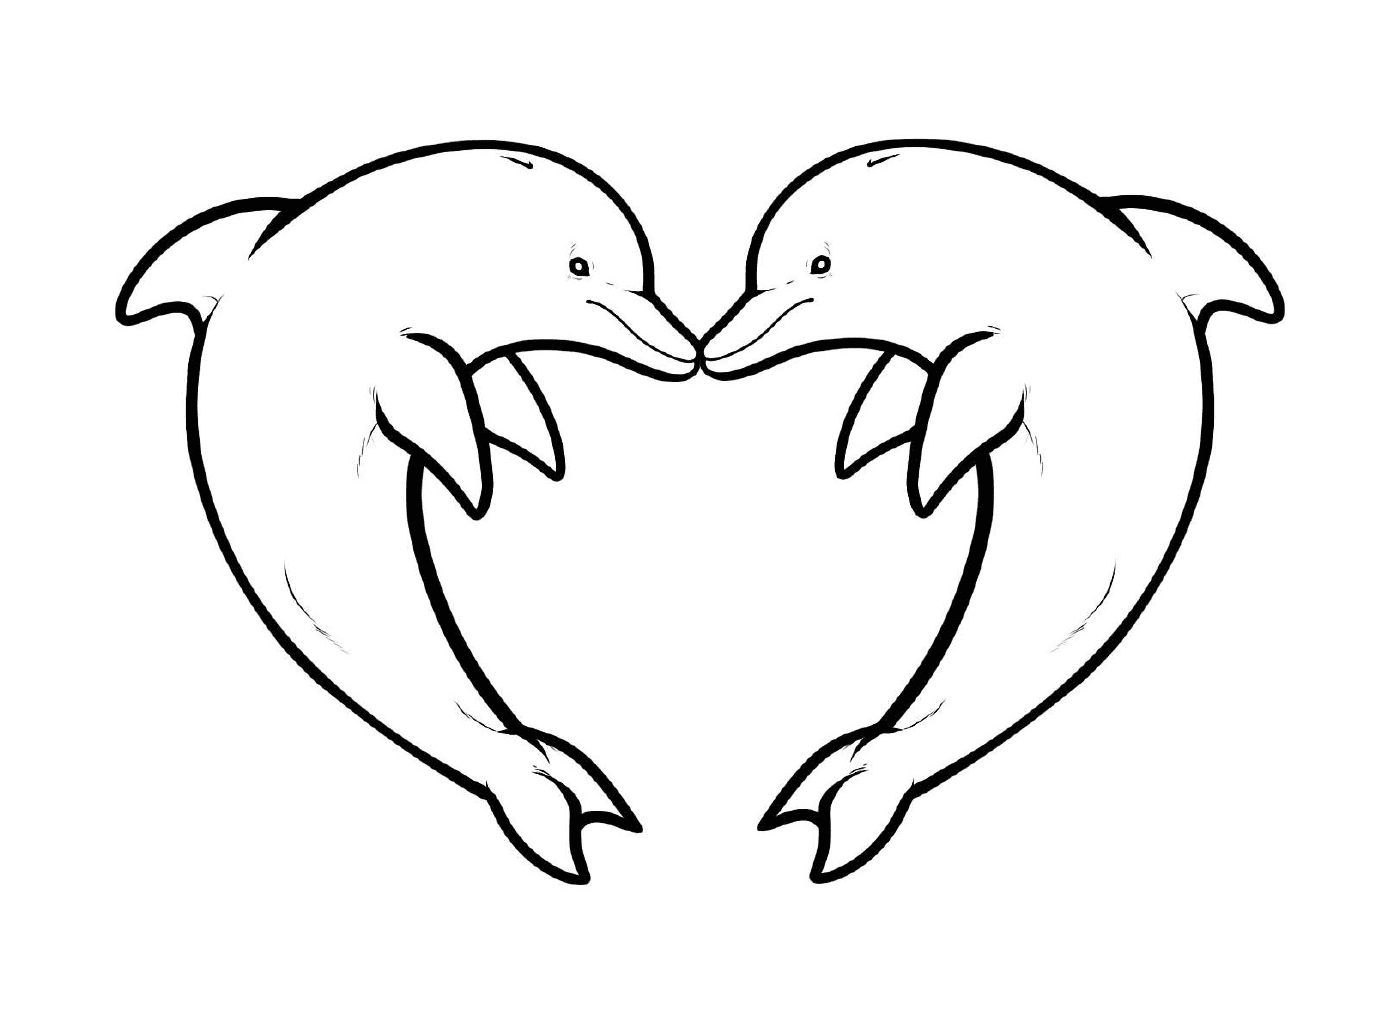  形成心脏形状的两只海豚 